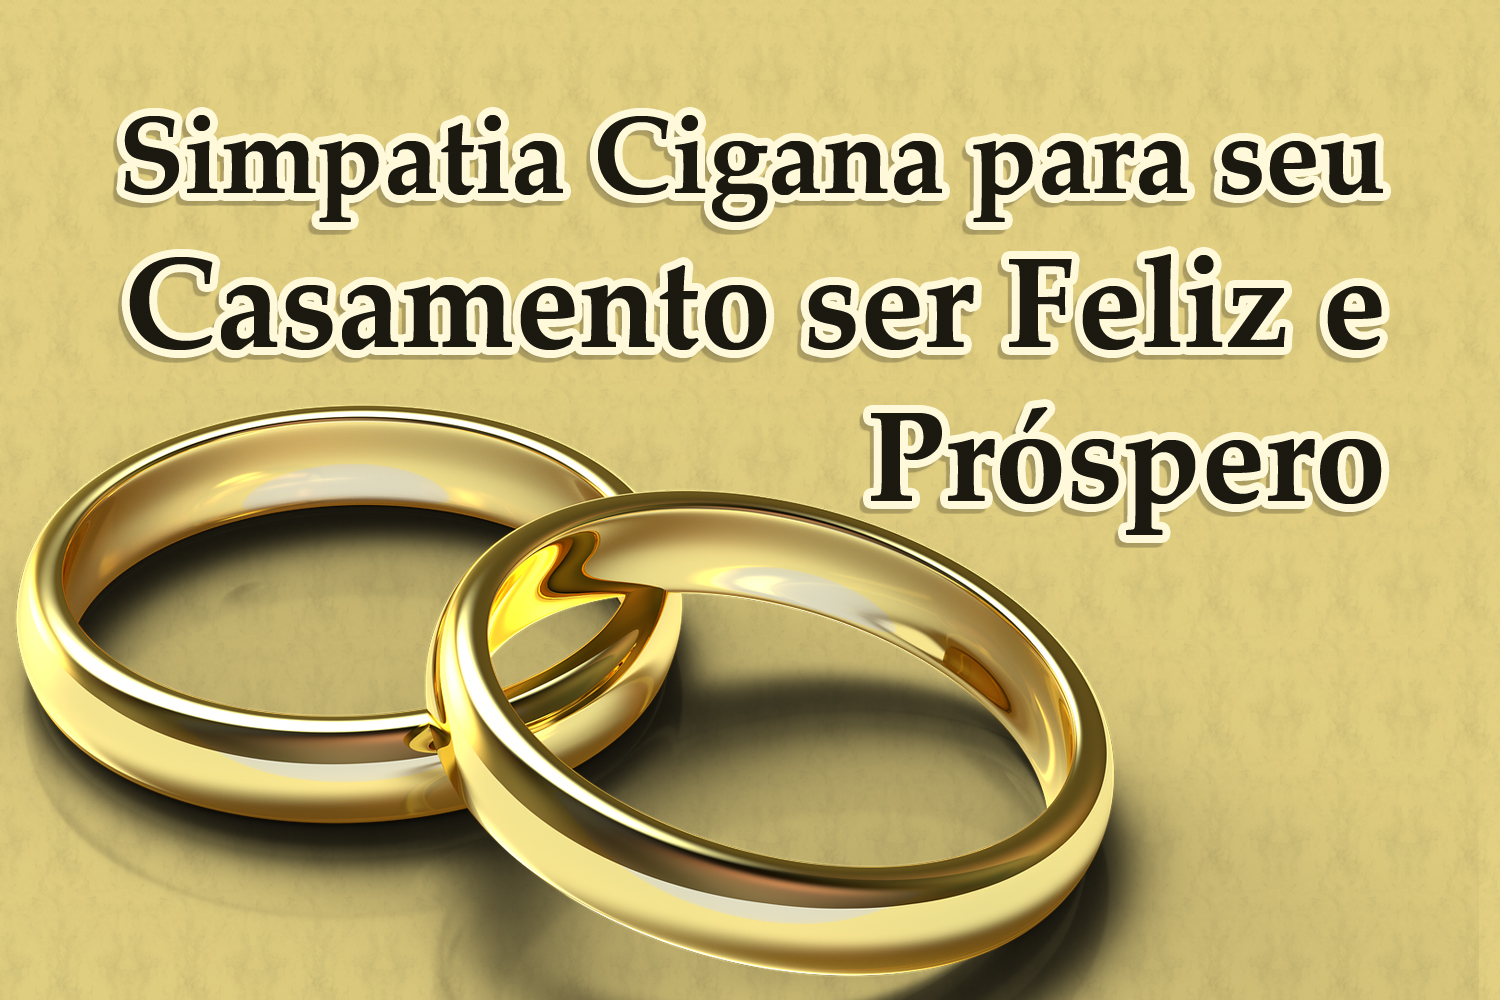 Simpatia Cigana para seu Casamento ser Feliz e Próspero